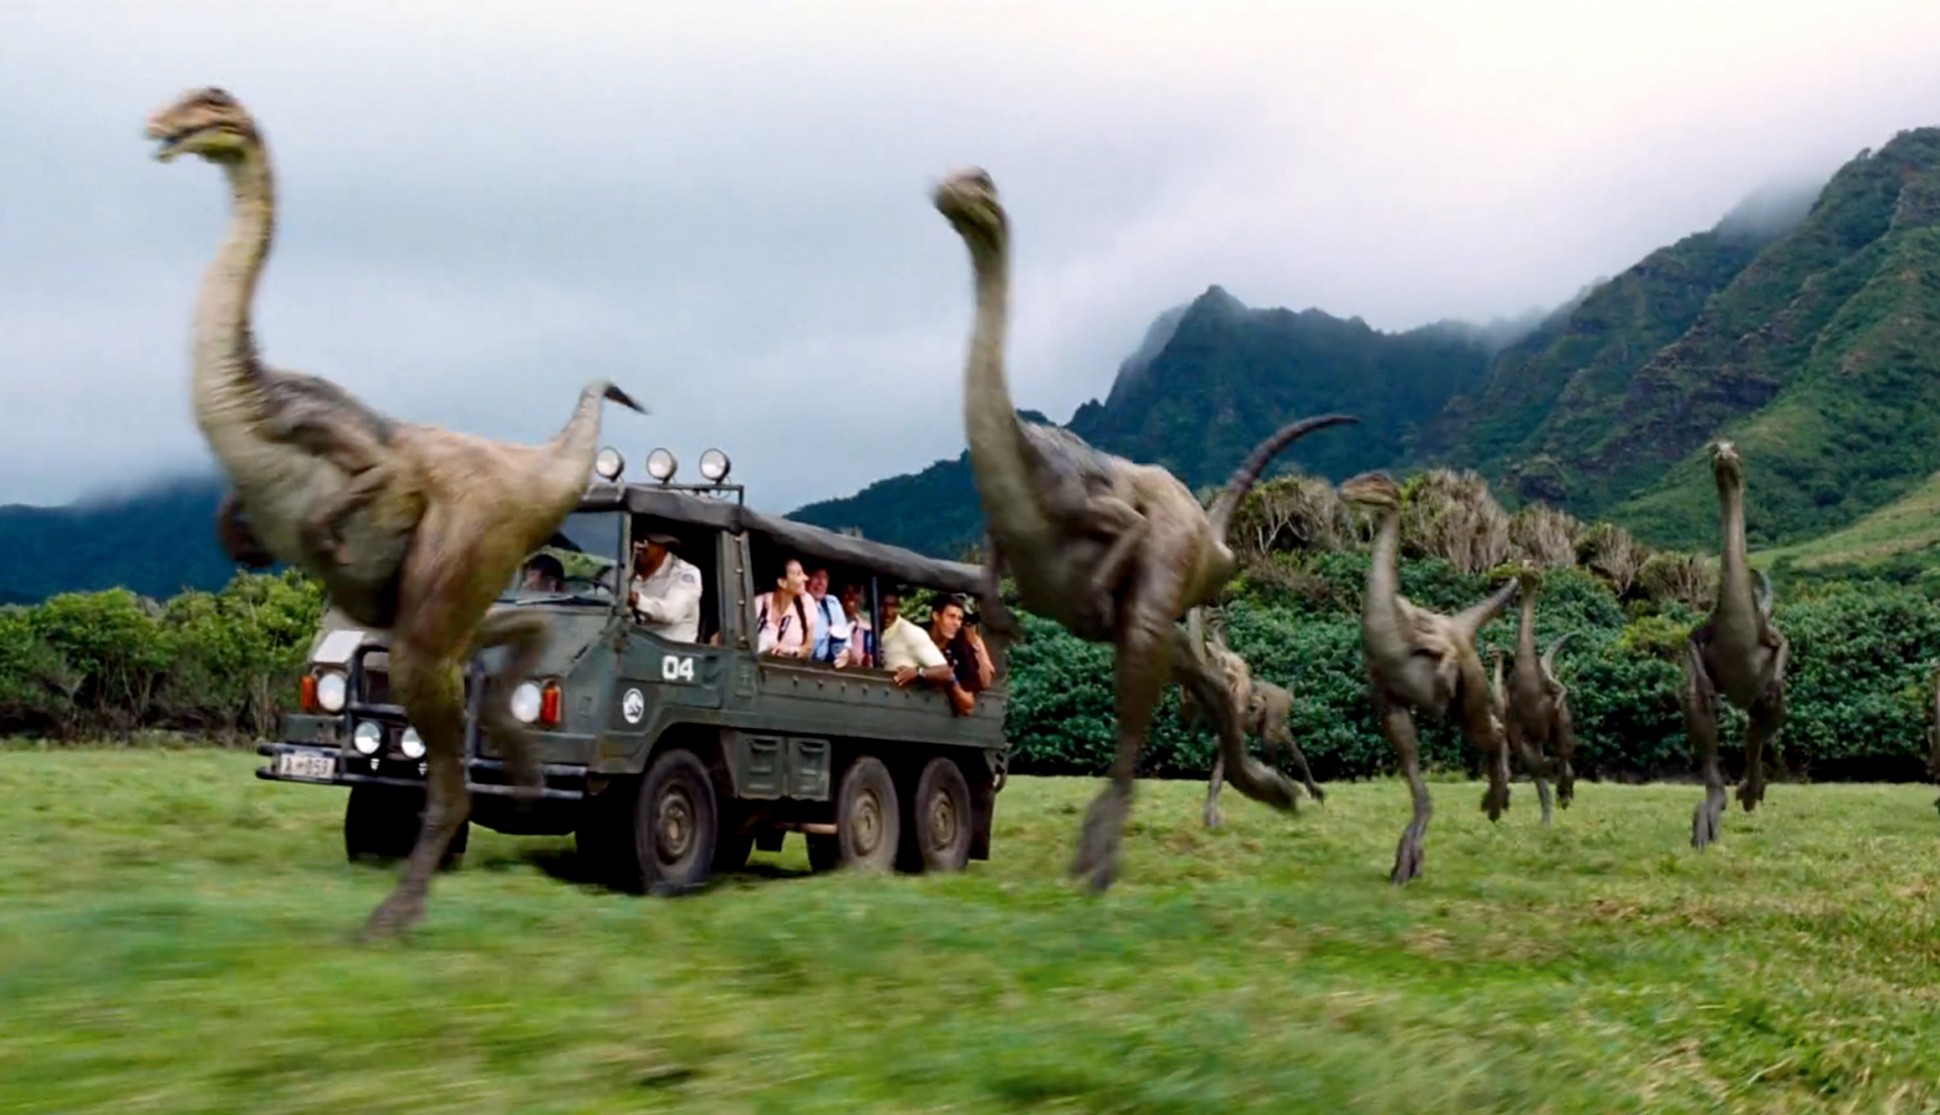 Snapshot from Jurassic World movie